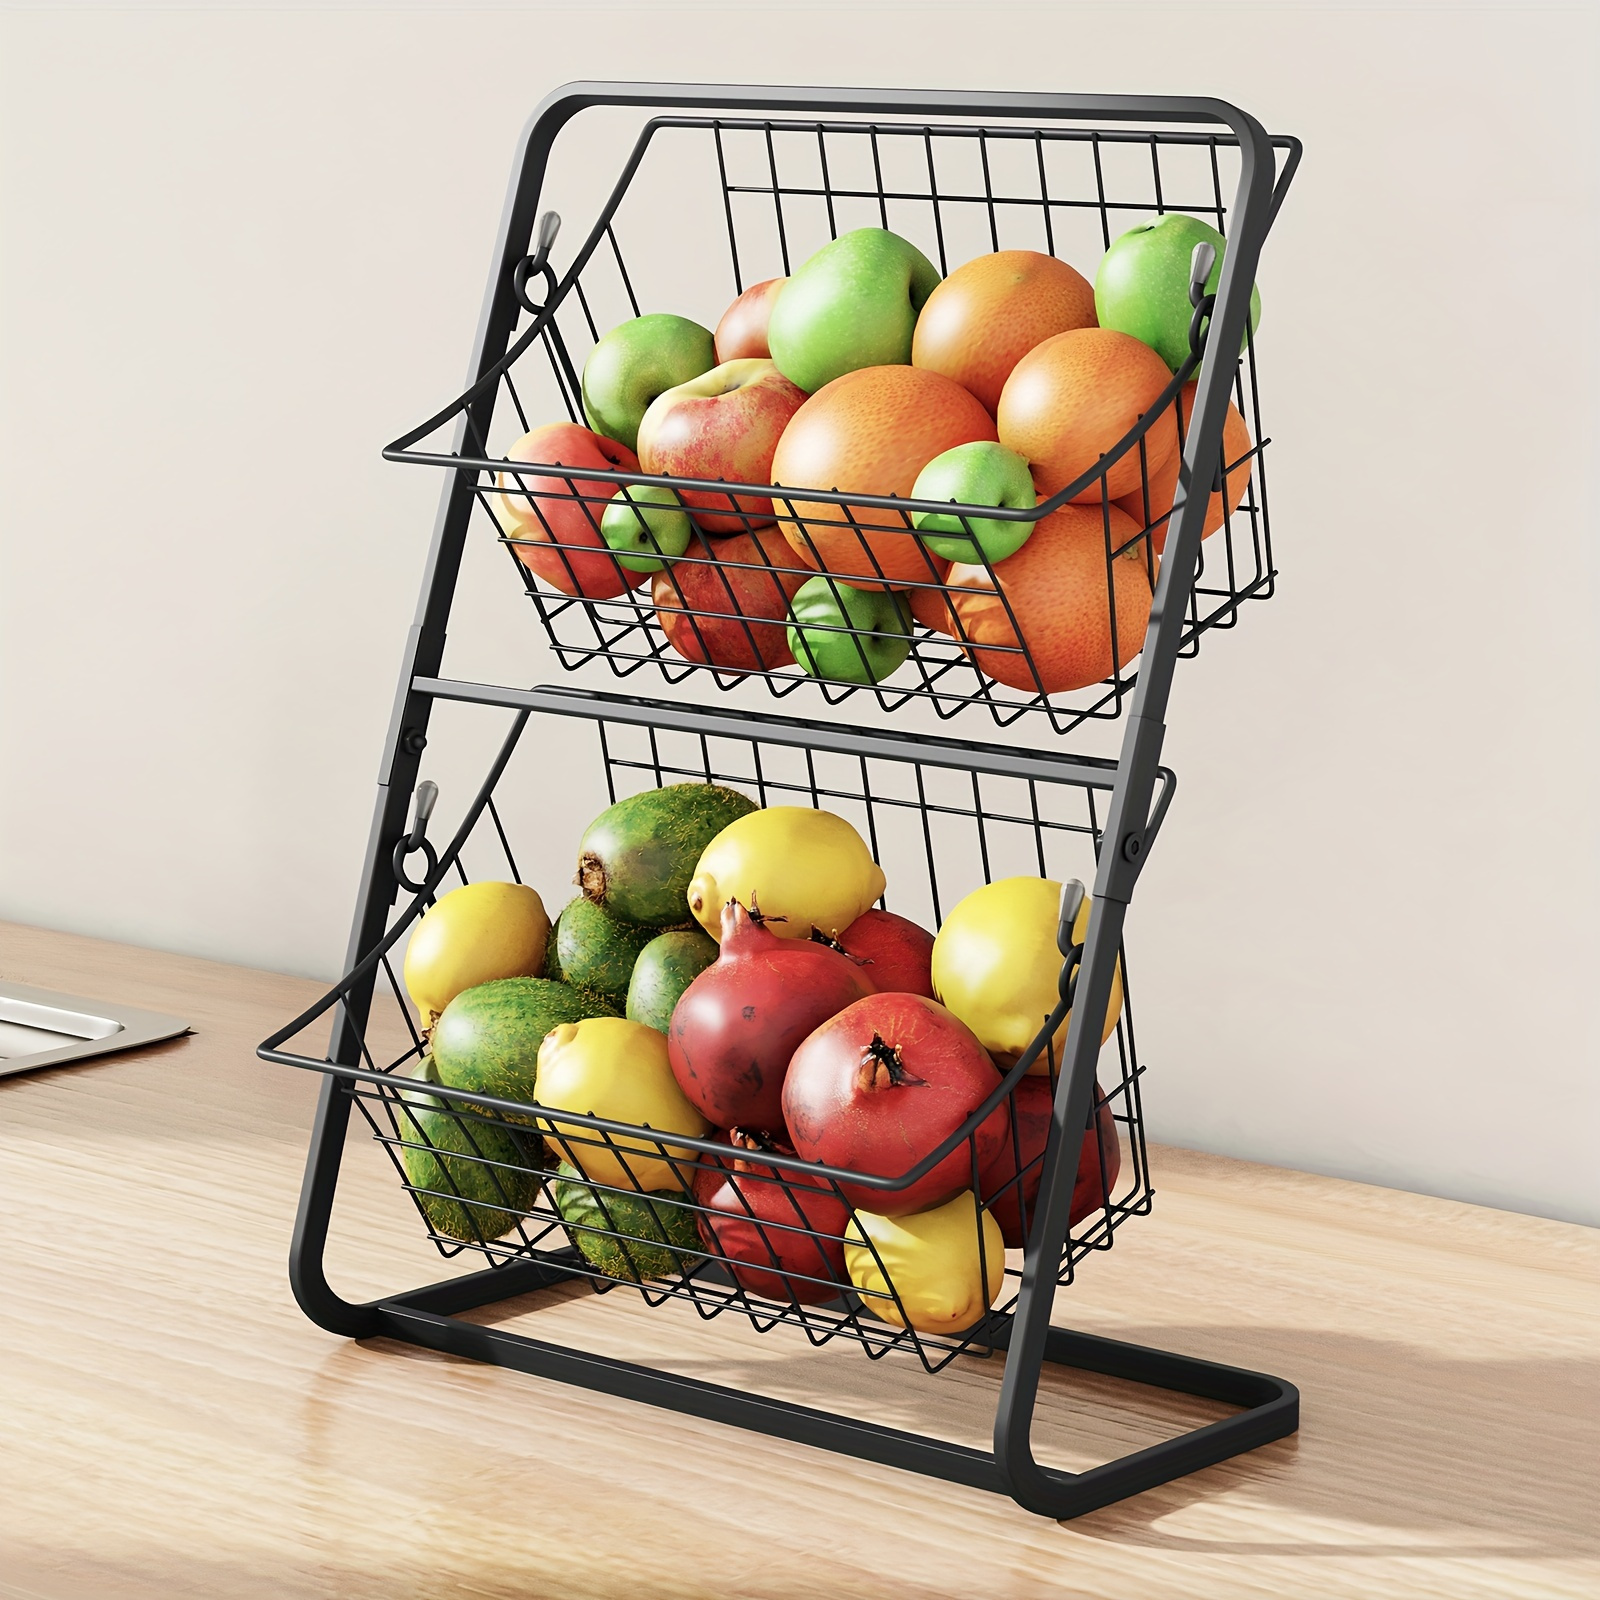 SNTD Cesta de frutas y verduras para cocina con tapa superior de metal,  carrito de almacenamiento giratorio de 5 niveles para papa, cebolla, pan